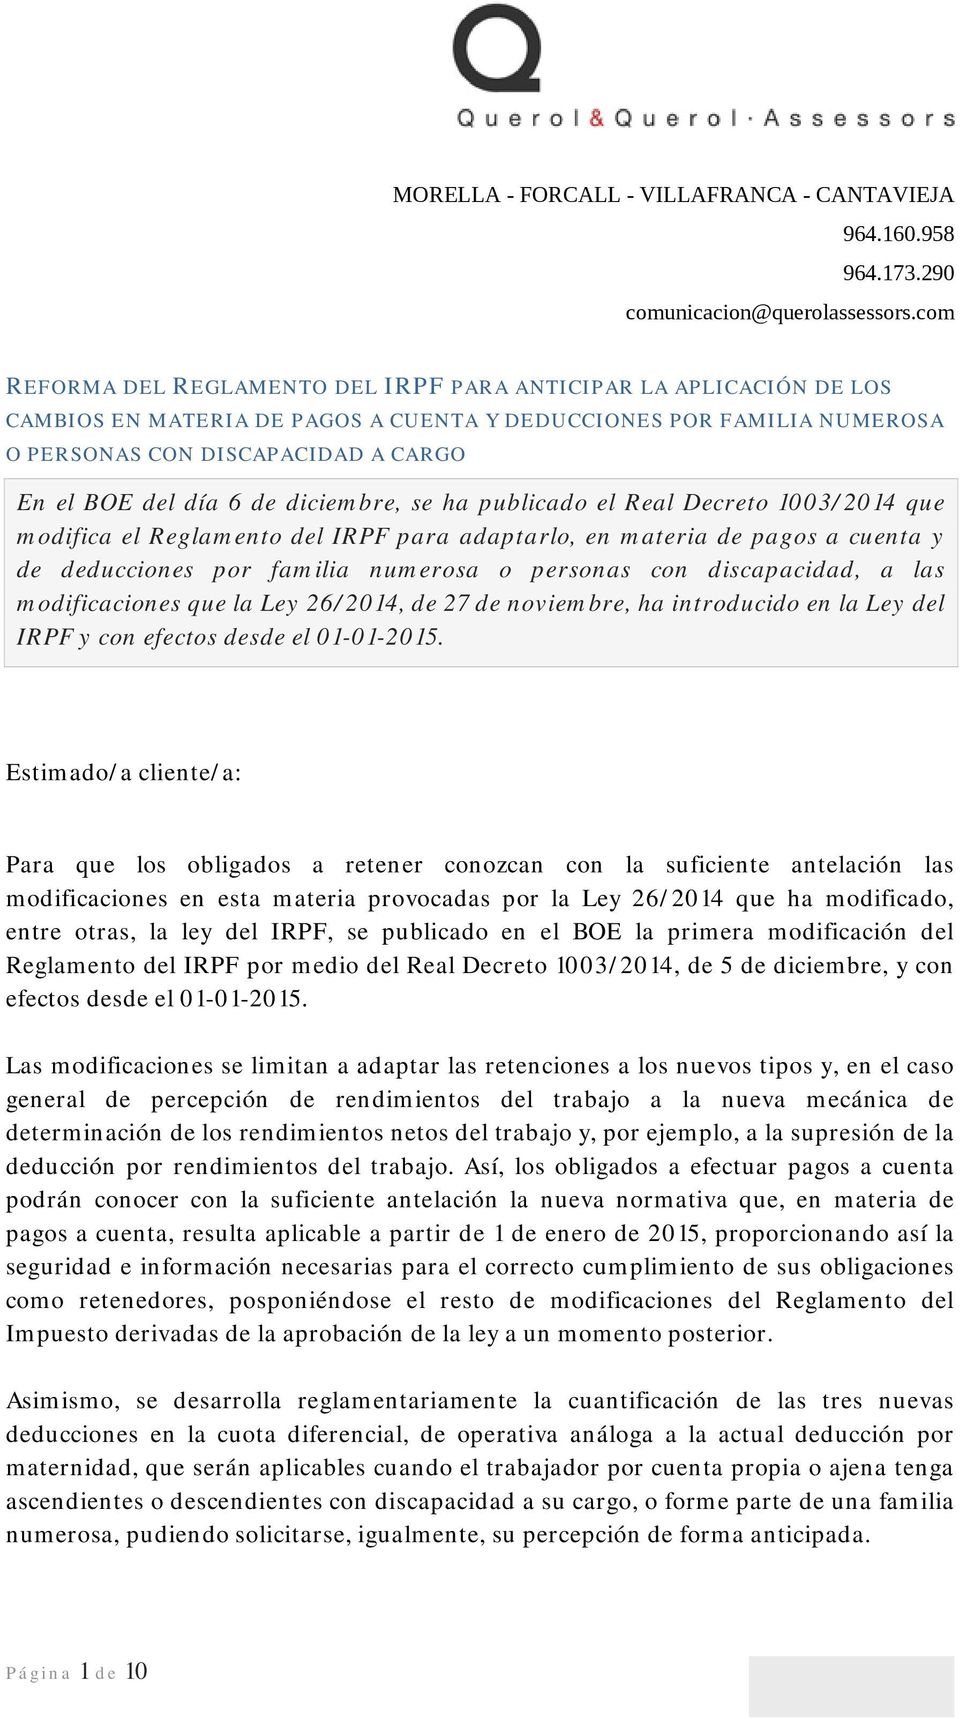 de diciembre, se ha publicad el Real Decret 1003/2014 que mdifica el Reglament del IRPF para adaptarl, en materia de pags a cuenta y de deduccines pr familia numersa persnas cn discapacidad, a las